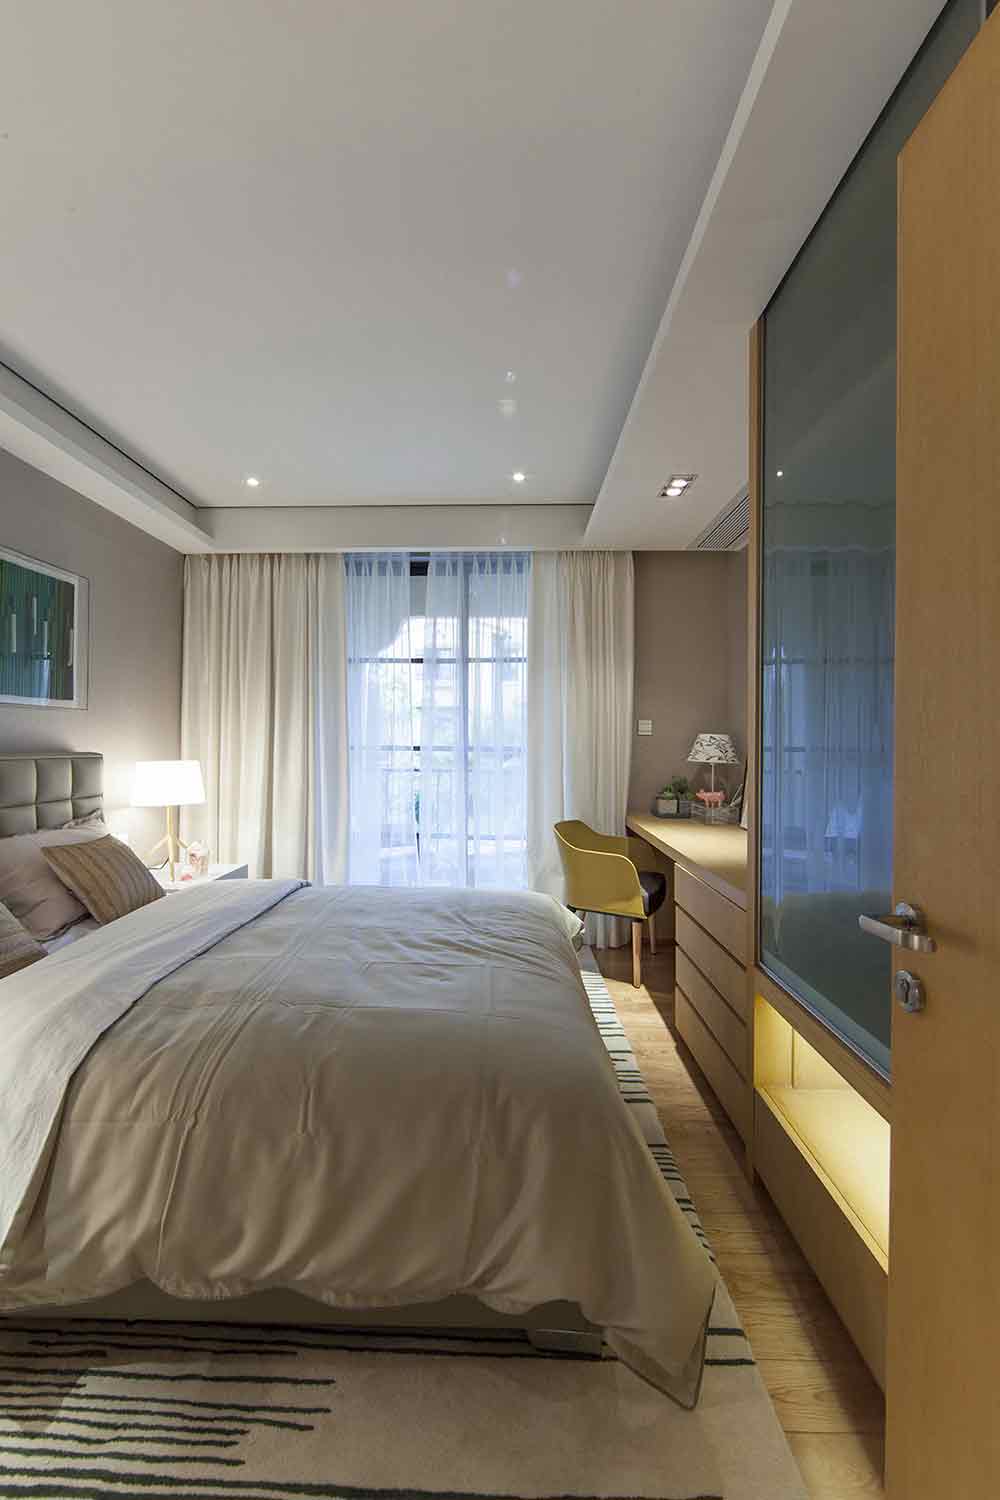 卧室的用色更为轻浅，白色双层窗帘将柔美的空间性格完美展现。床尾处一体式的书桌和衣柜设计实用功能极强。